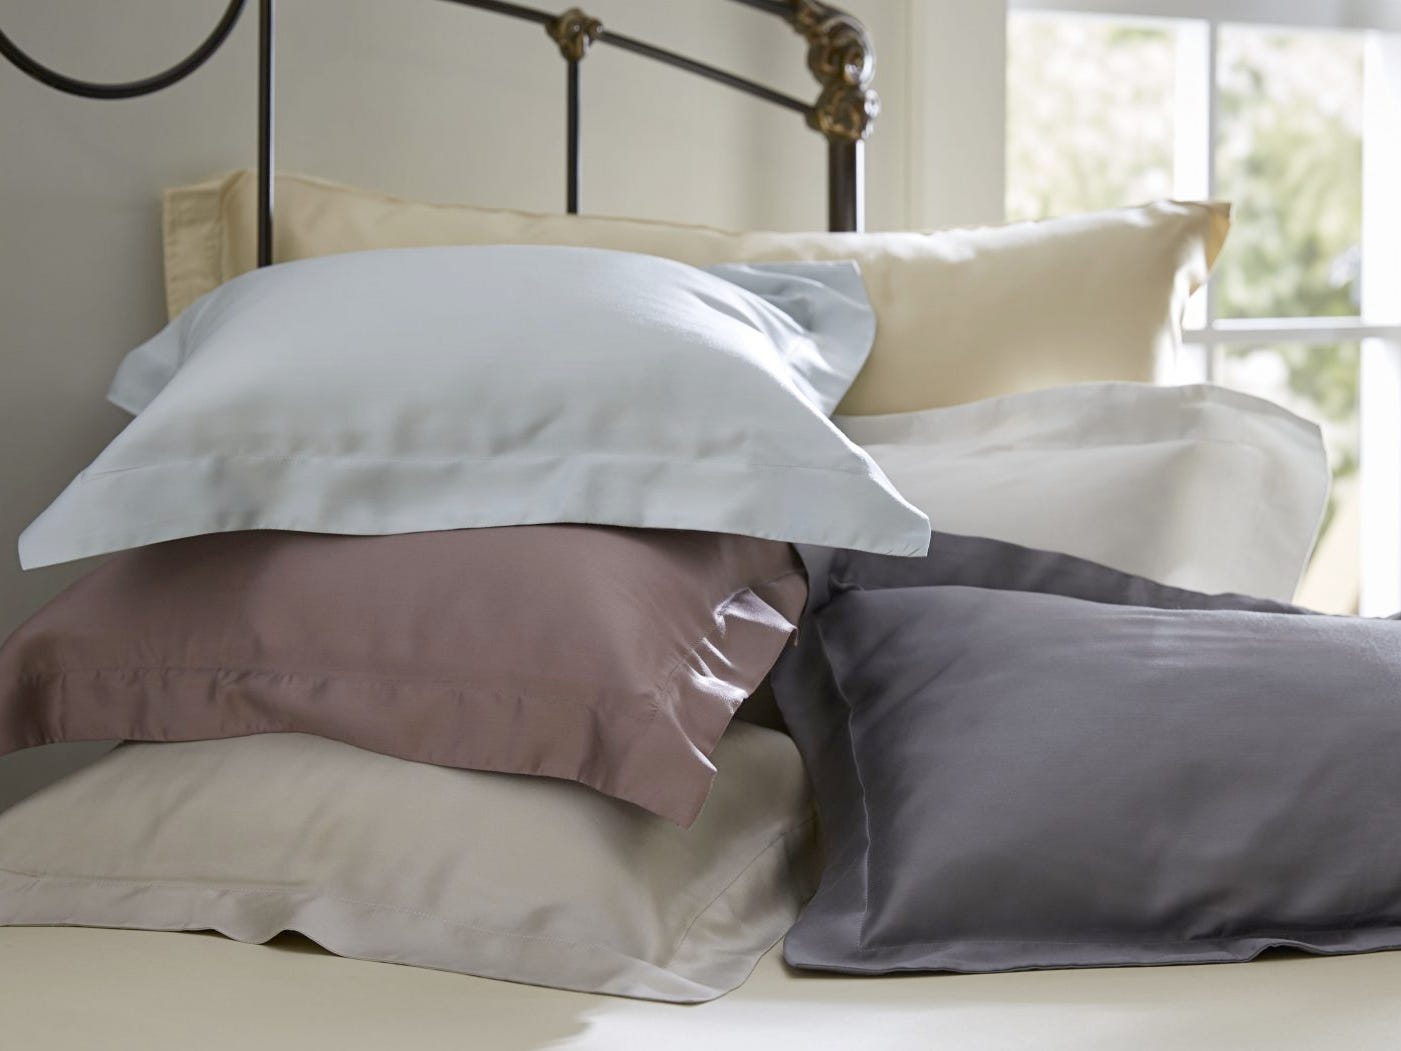 Auf einem Bett liegen mehrere Kissen in verschiedenfarbigen Kissenbezügen von SDH.